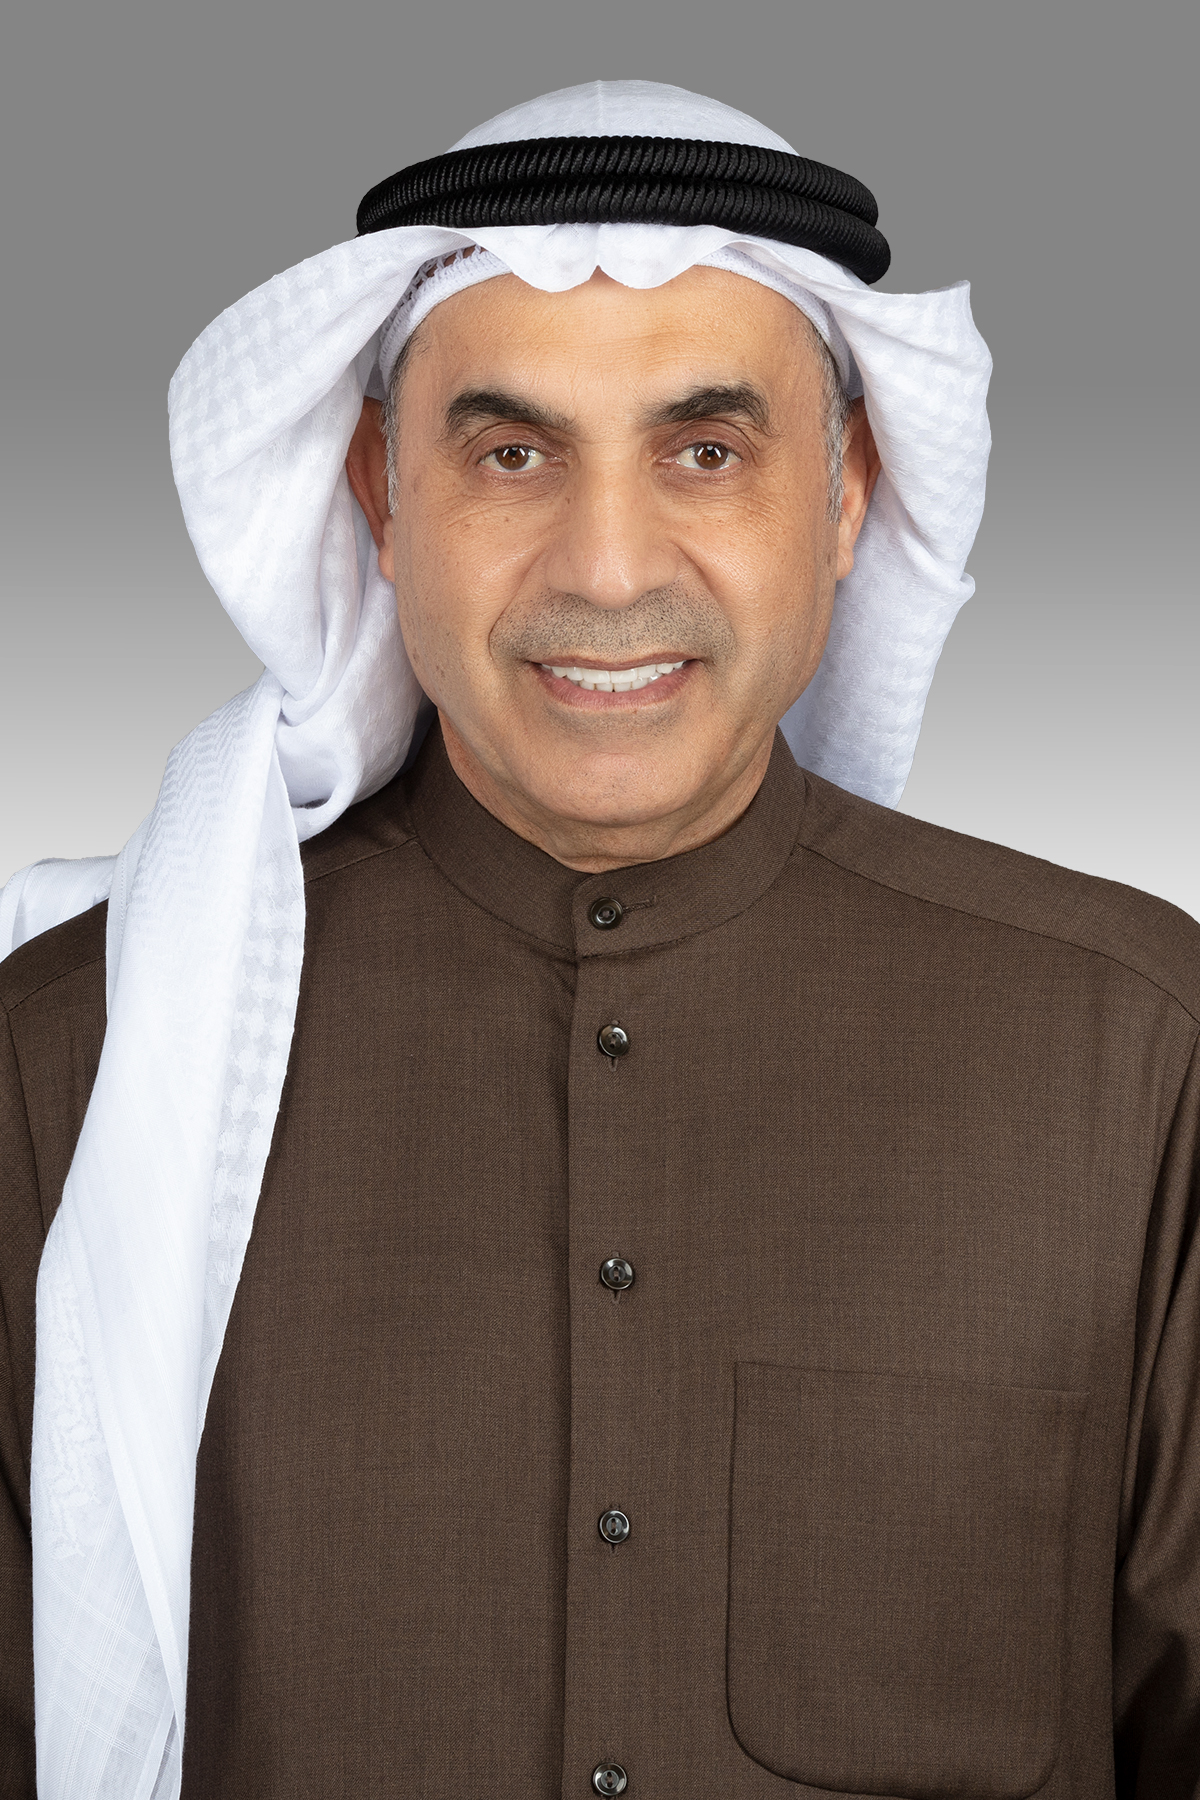 عبد الله الطريجي يقترح افتتاح مركزين لخدمة المواطن في هيئة الرياضة واللجنة الأولمبية